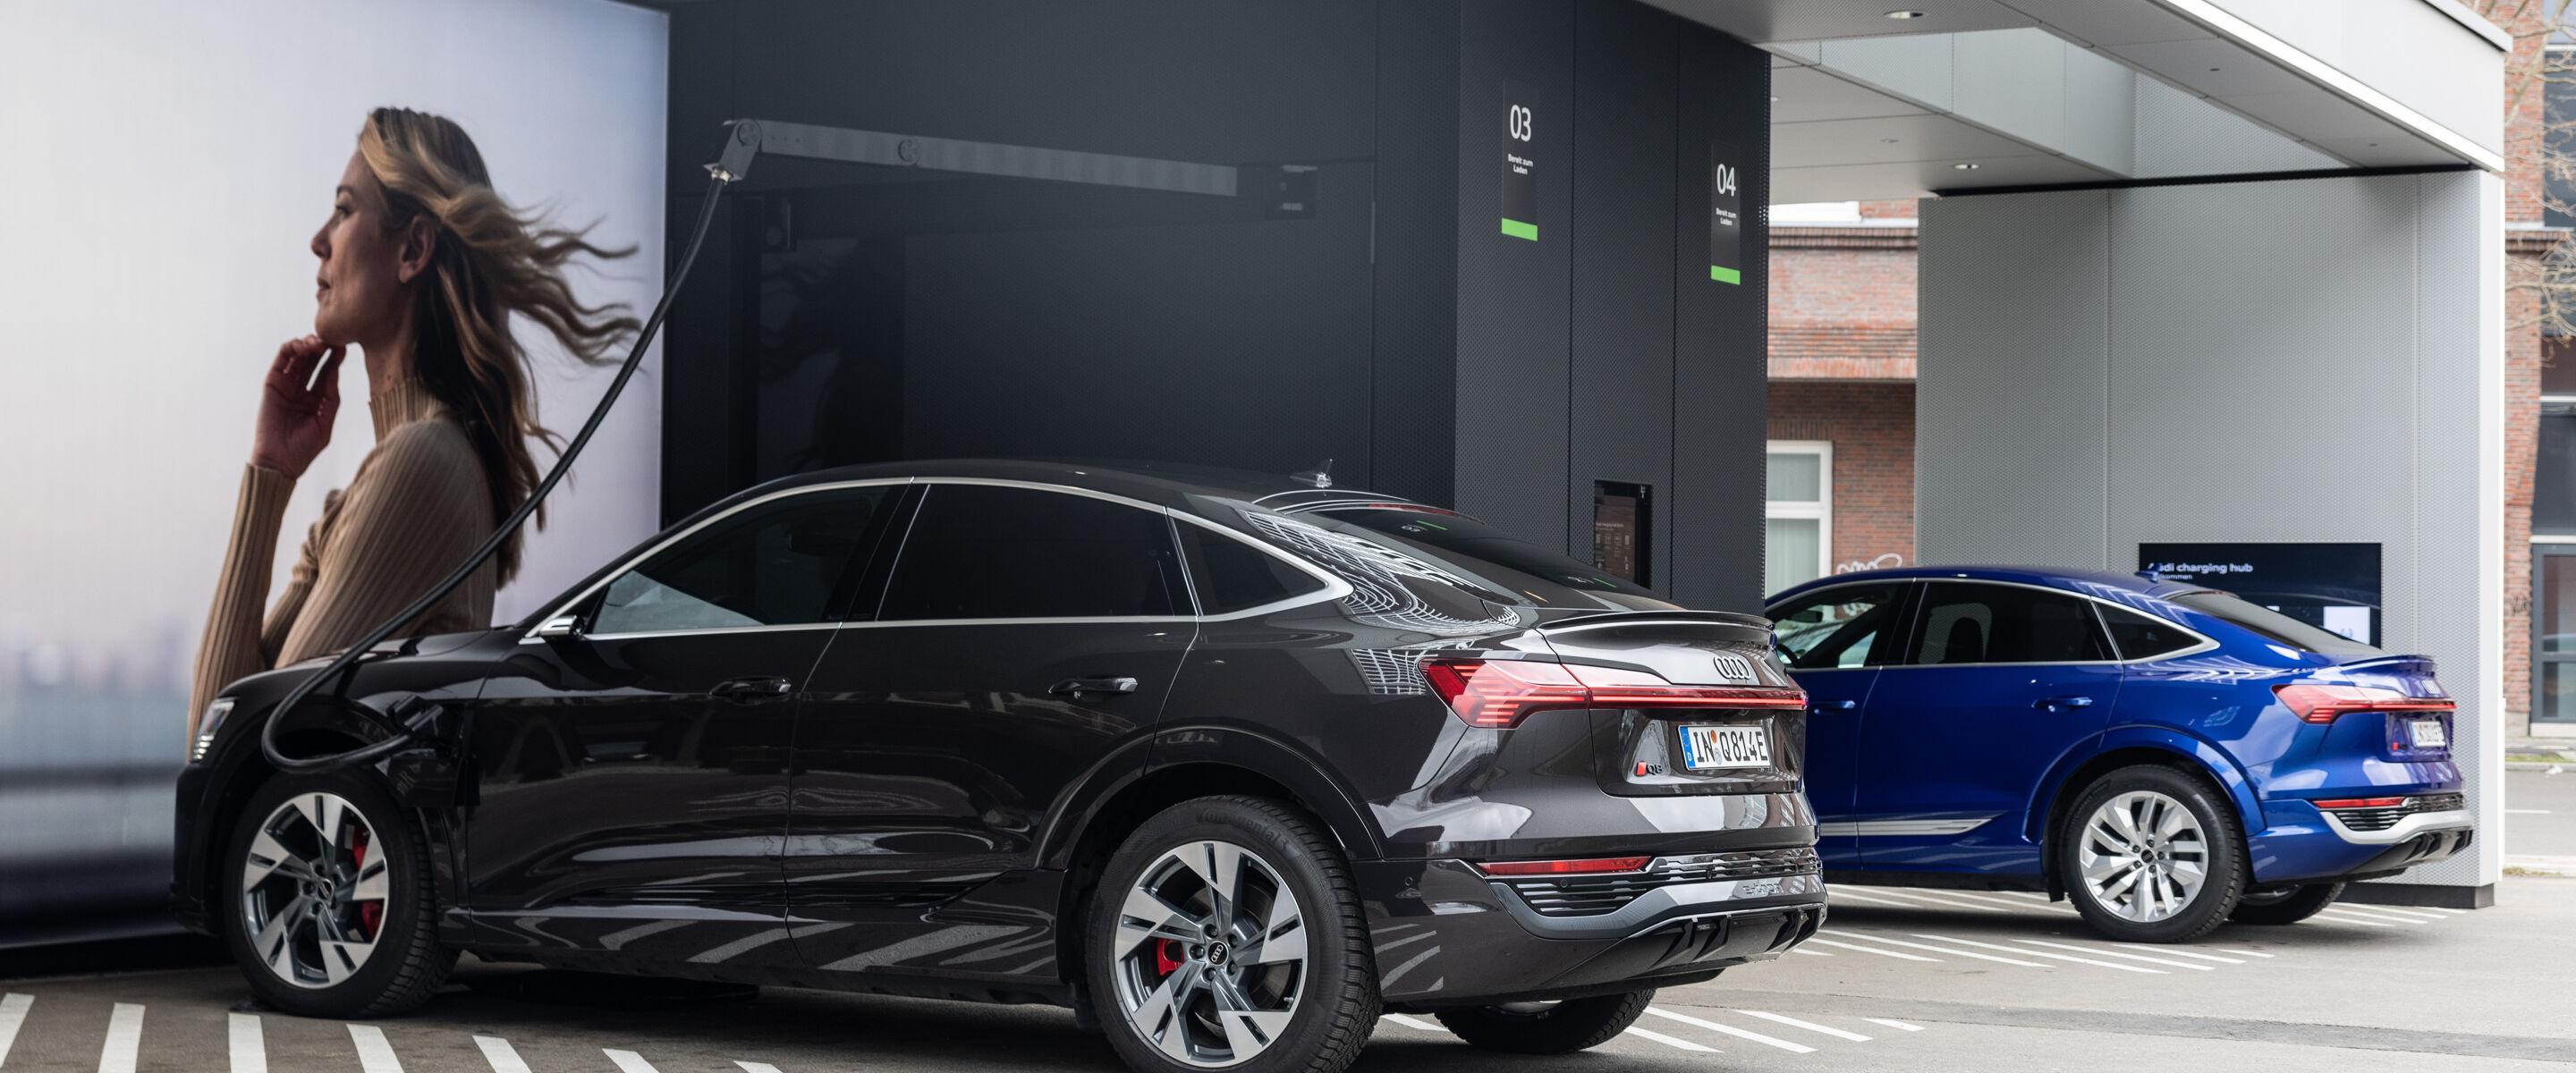 Nieuwe ‘Audi charging hub’ nu ook in Berlijn